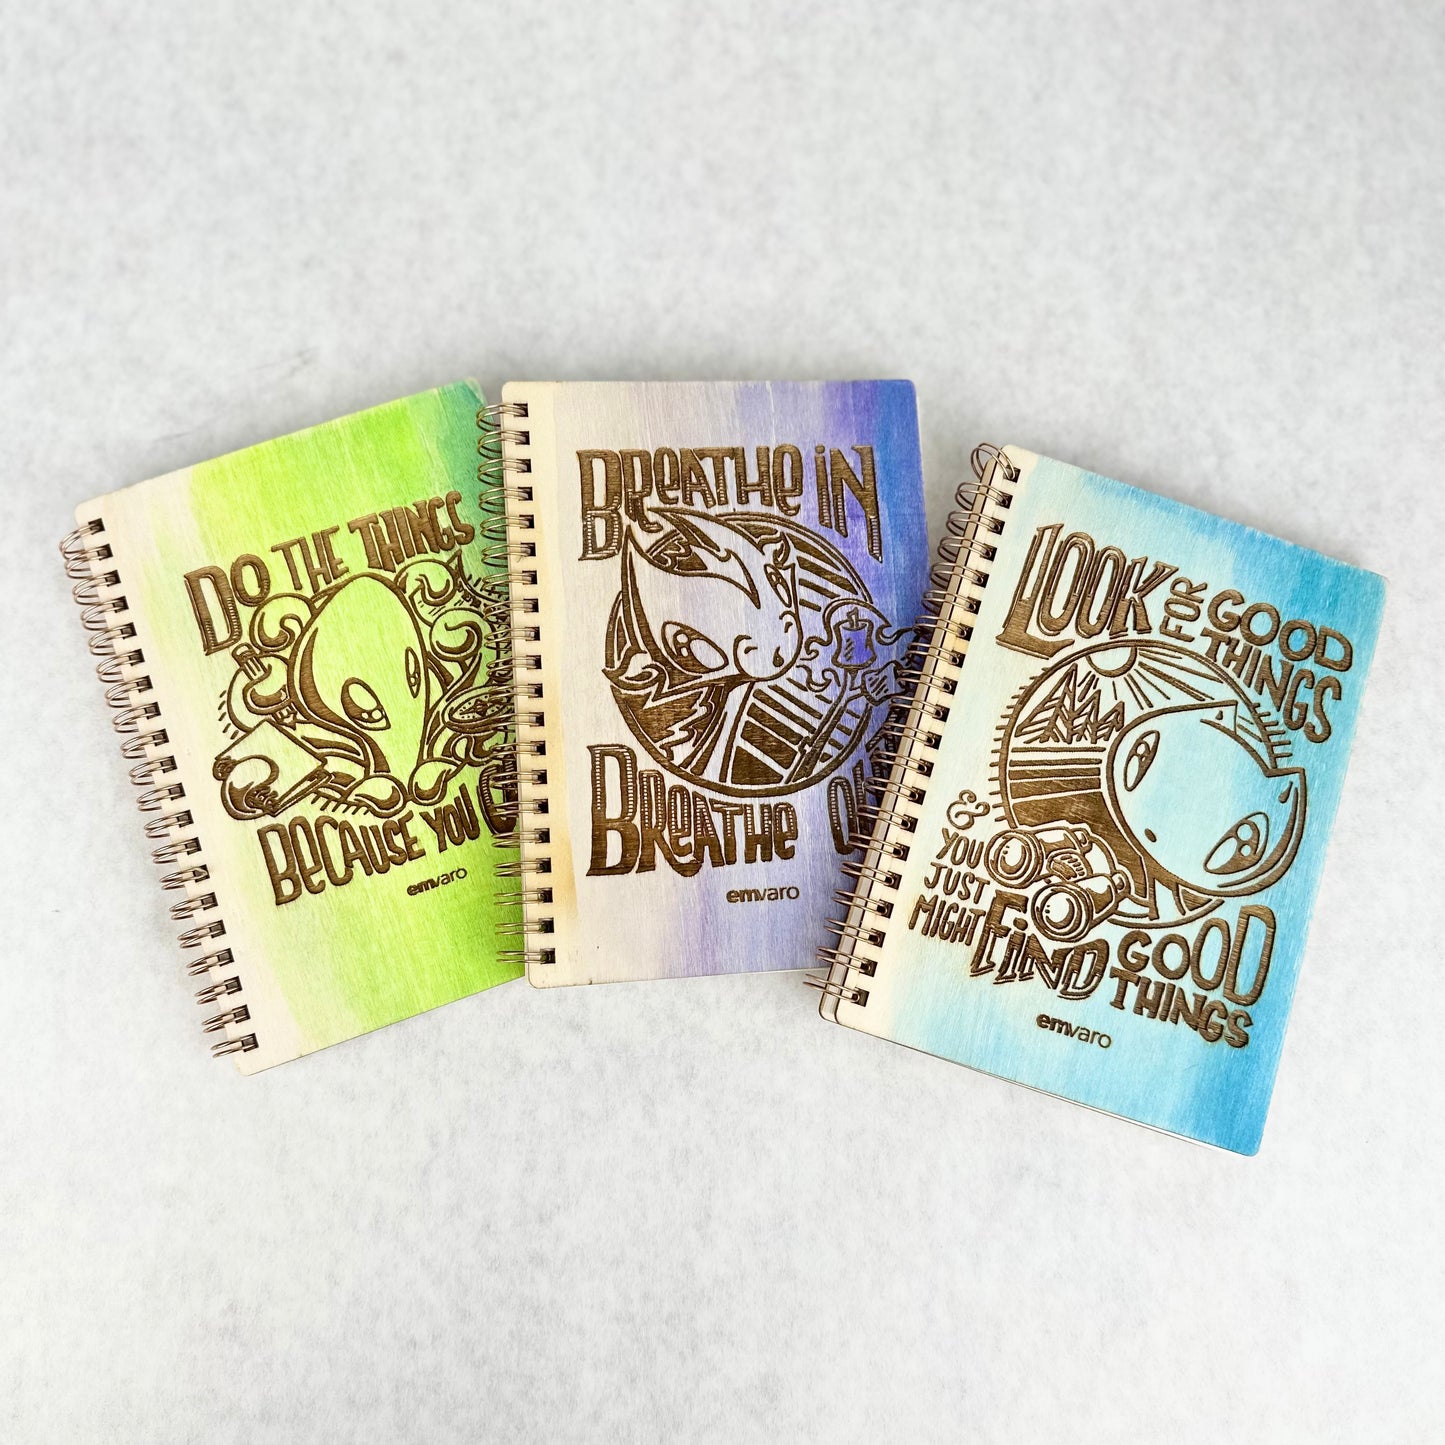 Notebook: Wood Engraved - Skoshie, Zeek, Wisp options